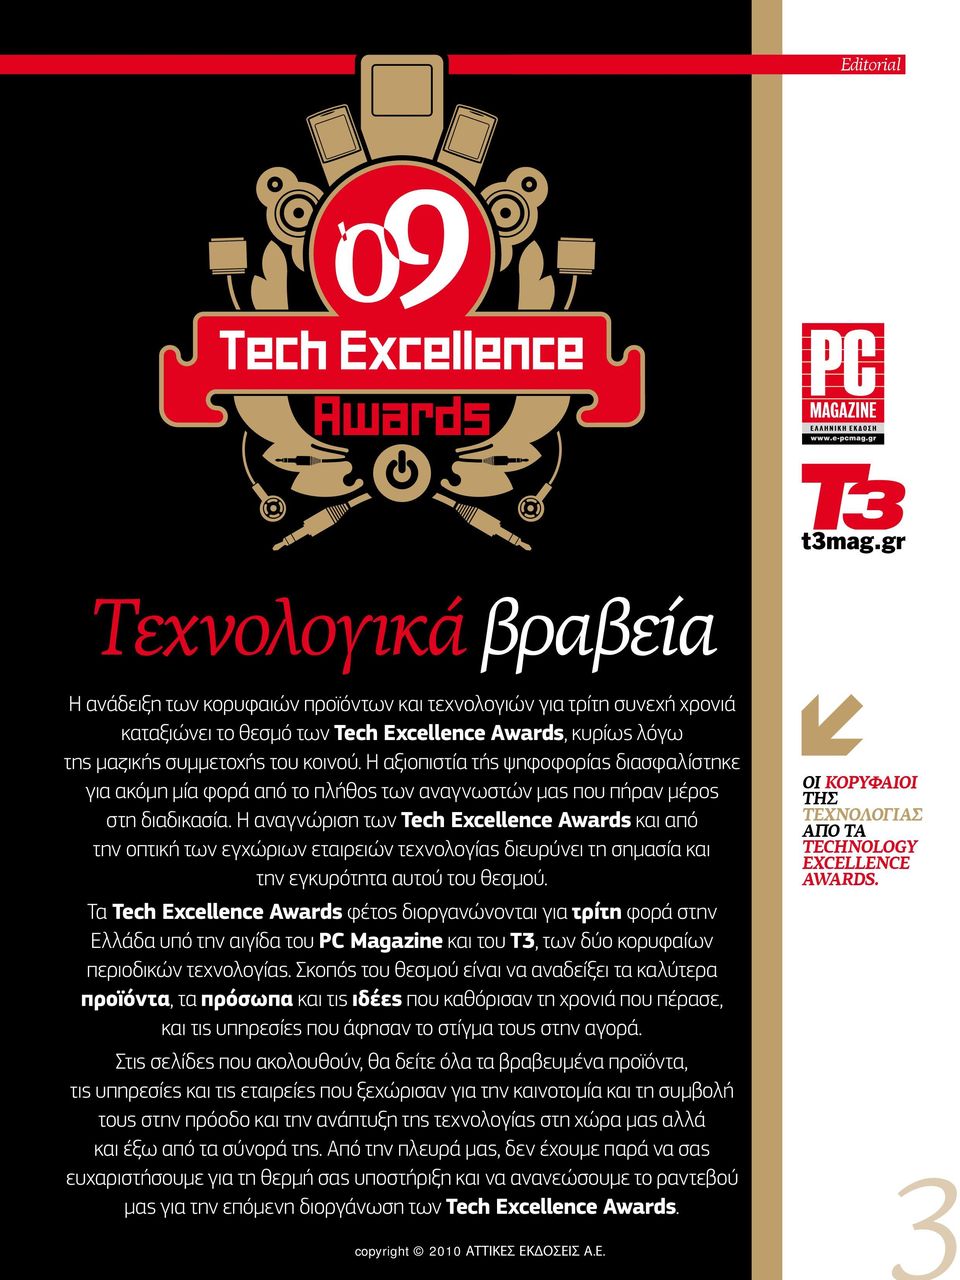 Η αναγνώριση των Tech Excellence Awards και από την οπτική των εγχώριων εταιρειών τεχνολογίας διευρύνει τη σημασία και την εγκυρότητα αυτού του θεσμού.